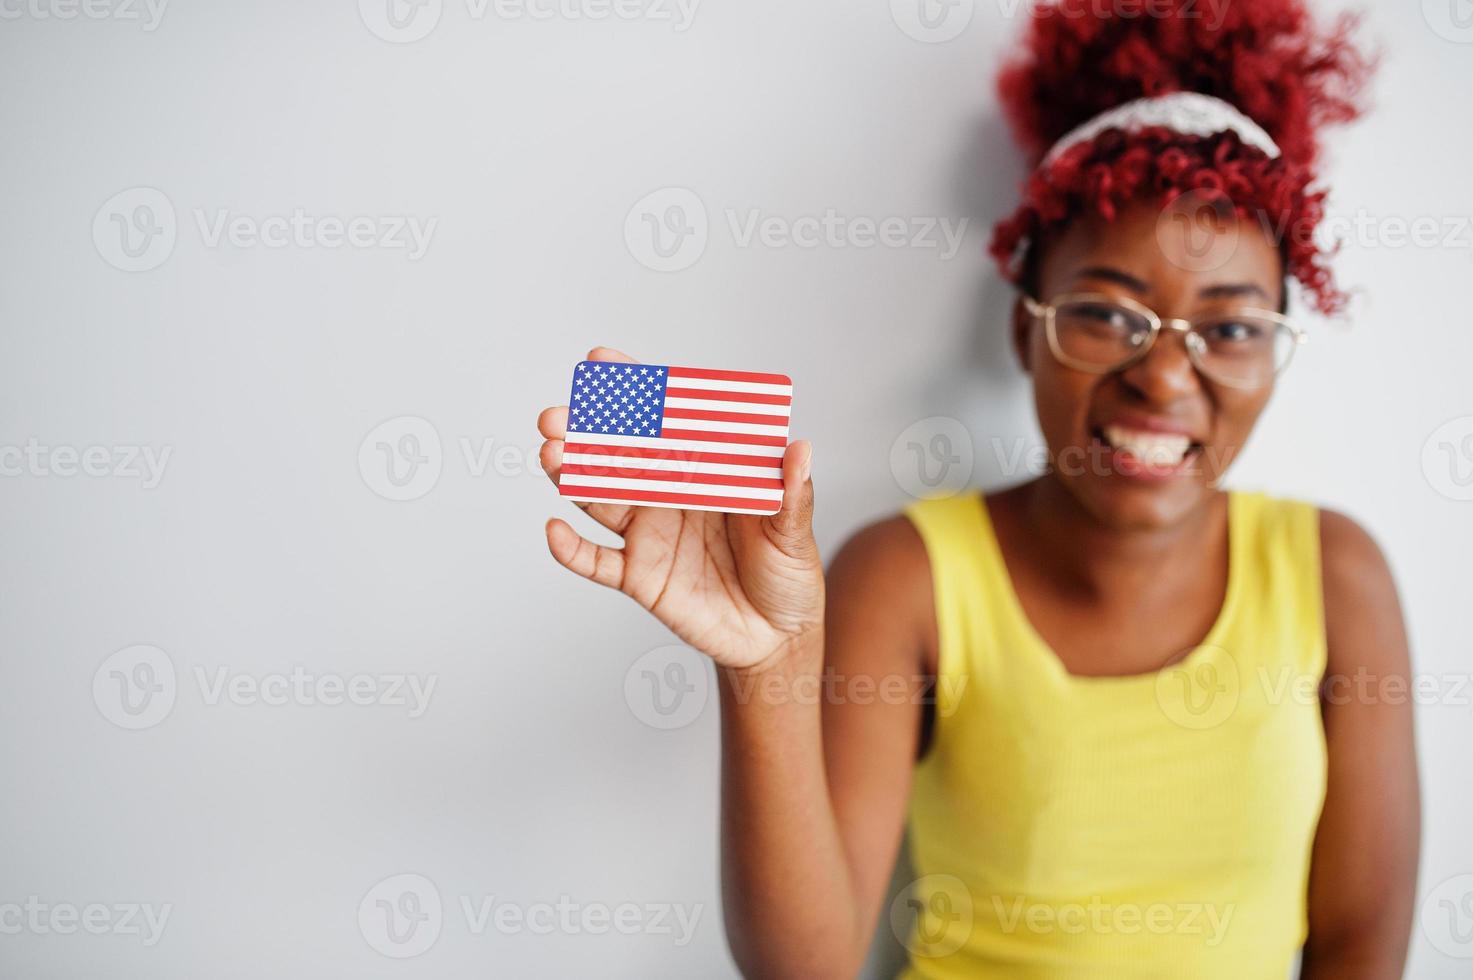 mulher afro-americana com cabelo afro, use camiseta amarela e óculos, segure a bandeira dos eua isolada no fundo branco. foto